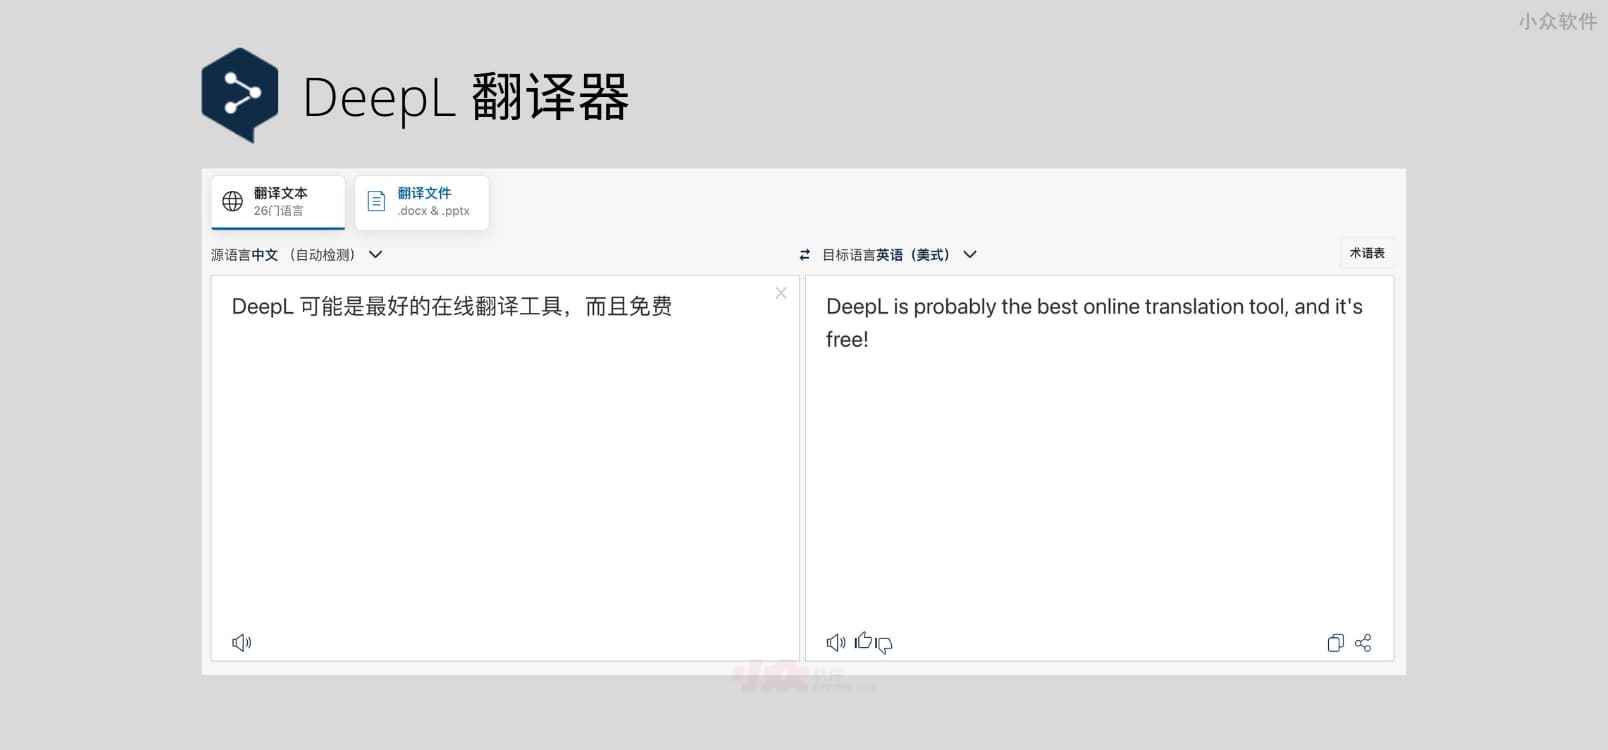 DeepL 发布 iPhone 客户端，可能是最好的在线翻译工具